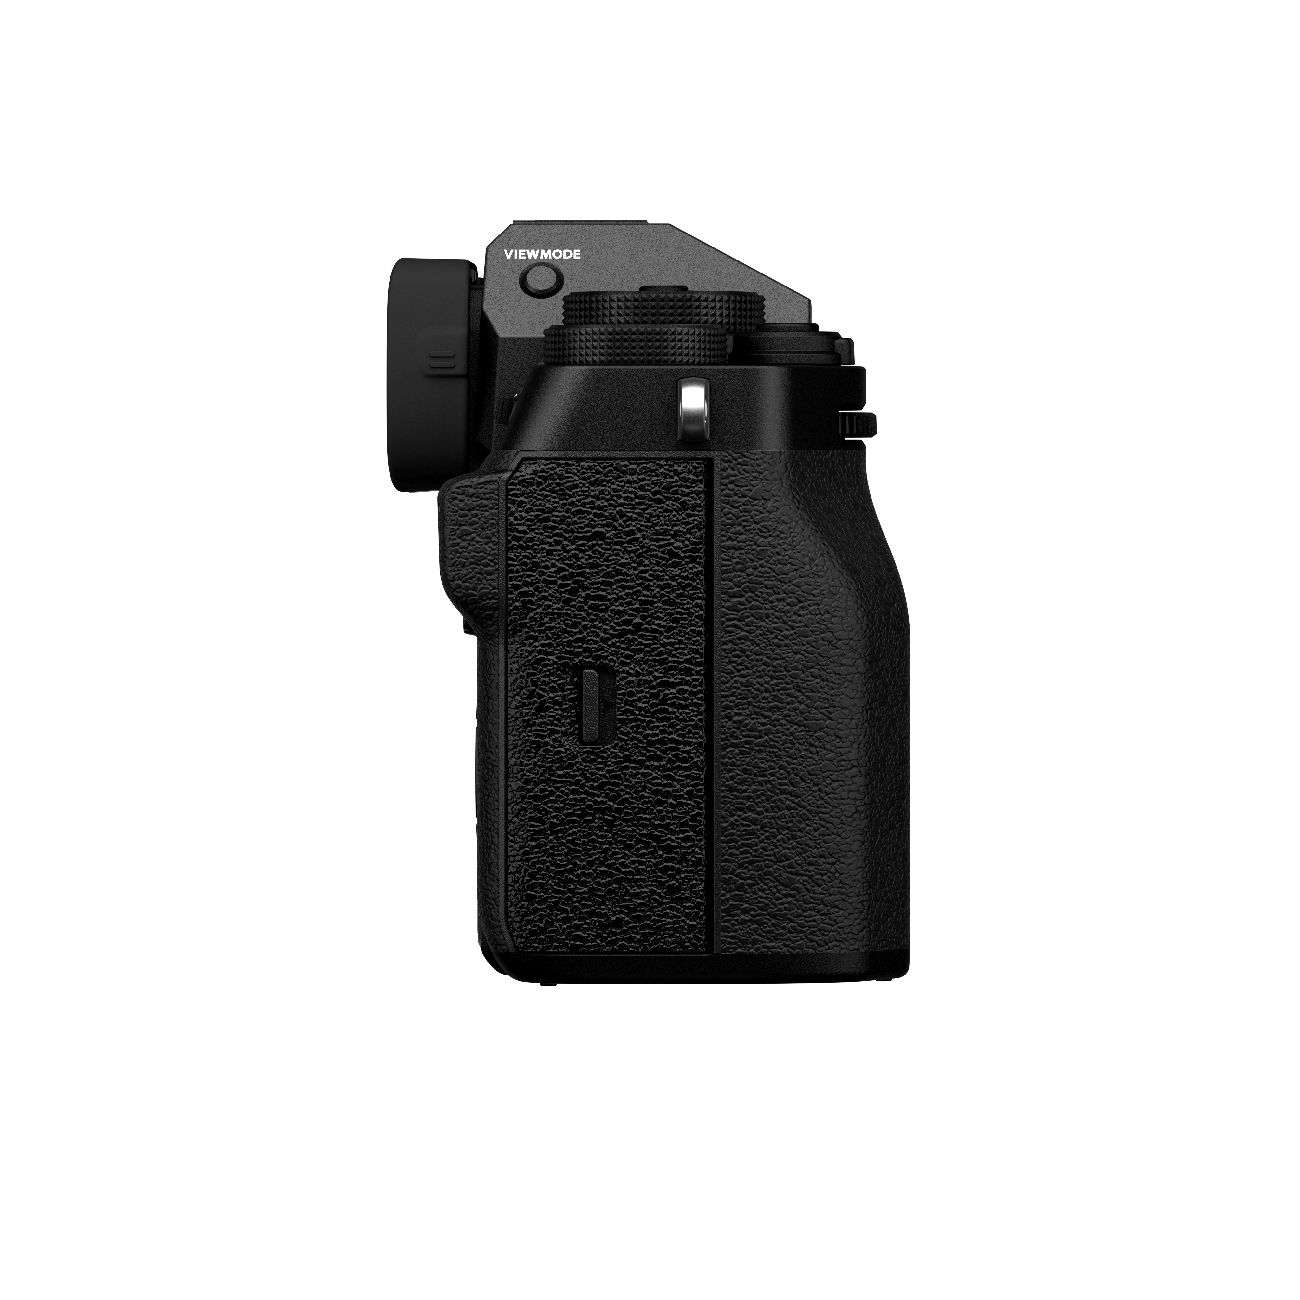 Fujifilm X-T5 schwarz + XF18-55mm 2.8-4 R.0 LM OIS